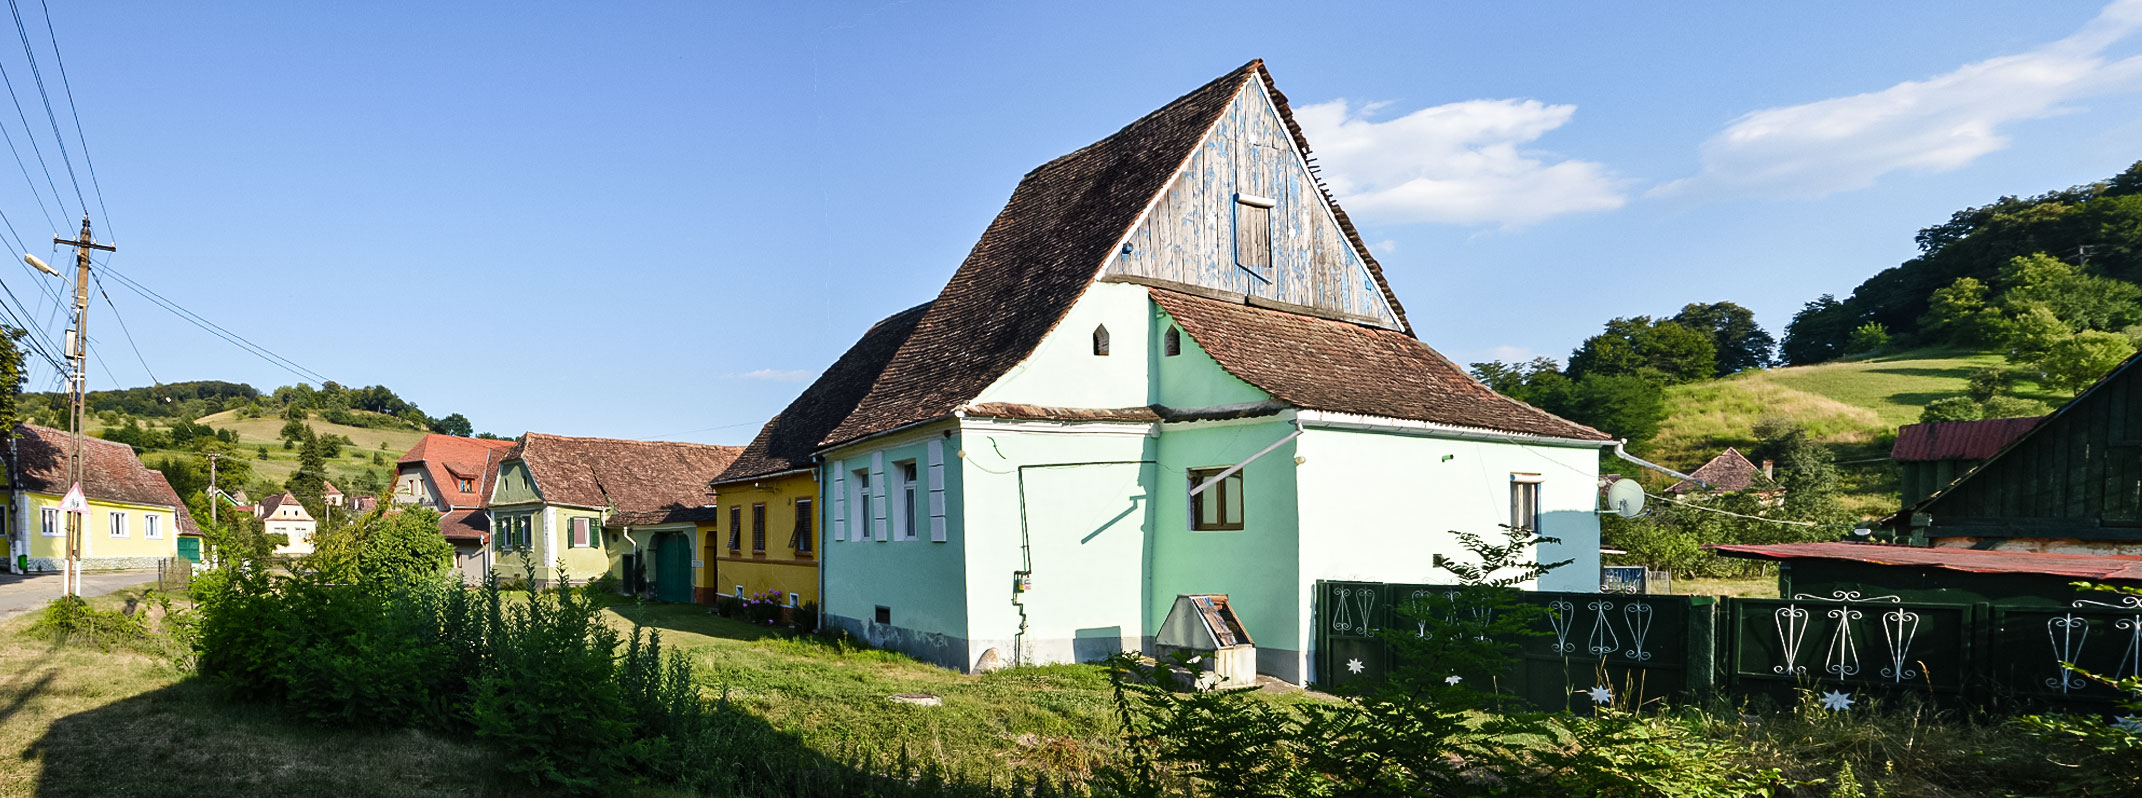 Dorfszene-Biertan